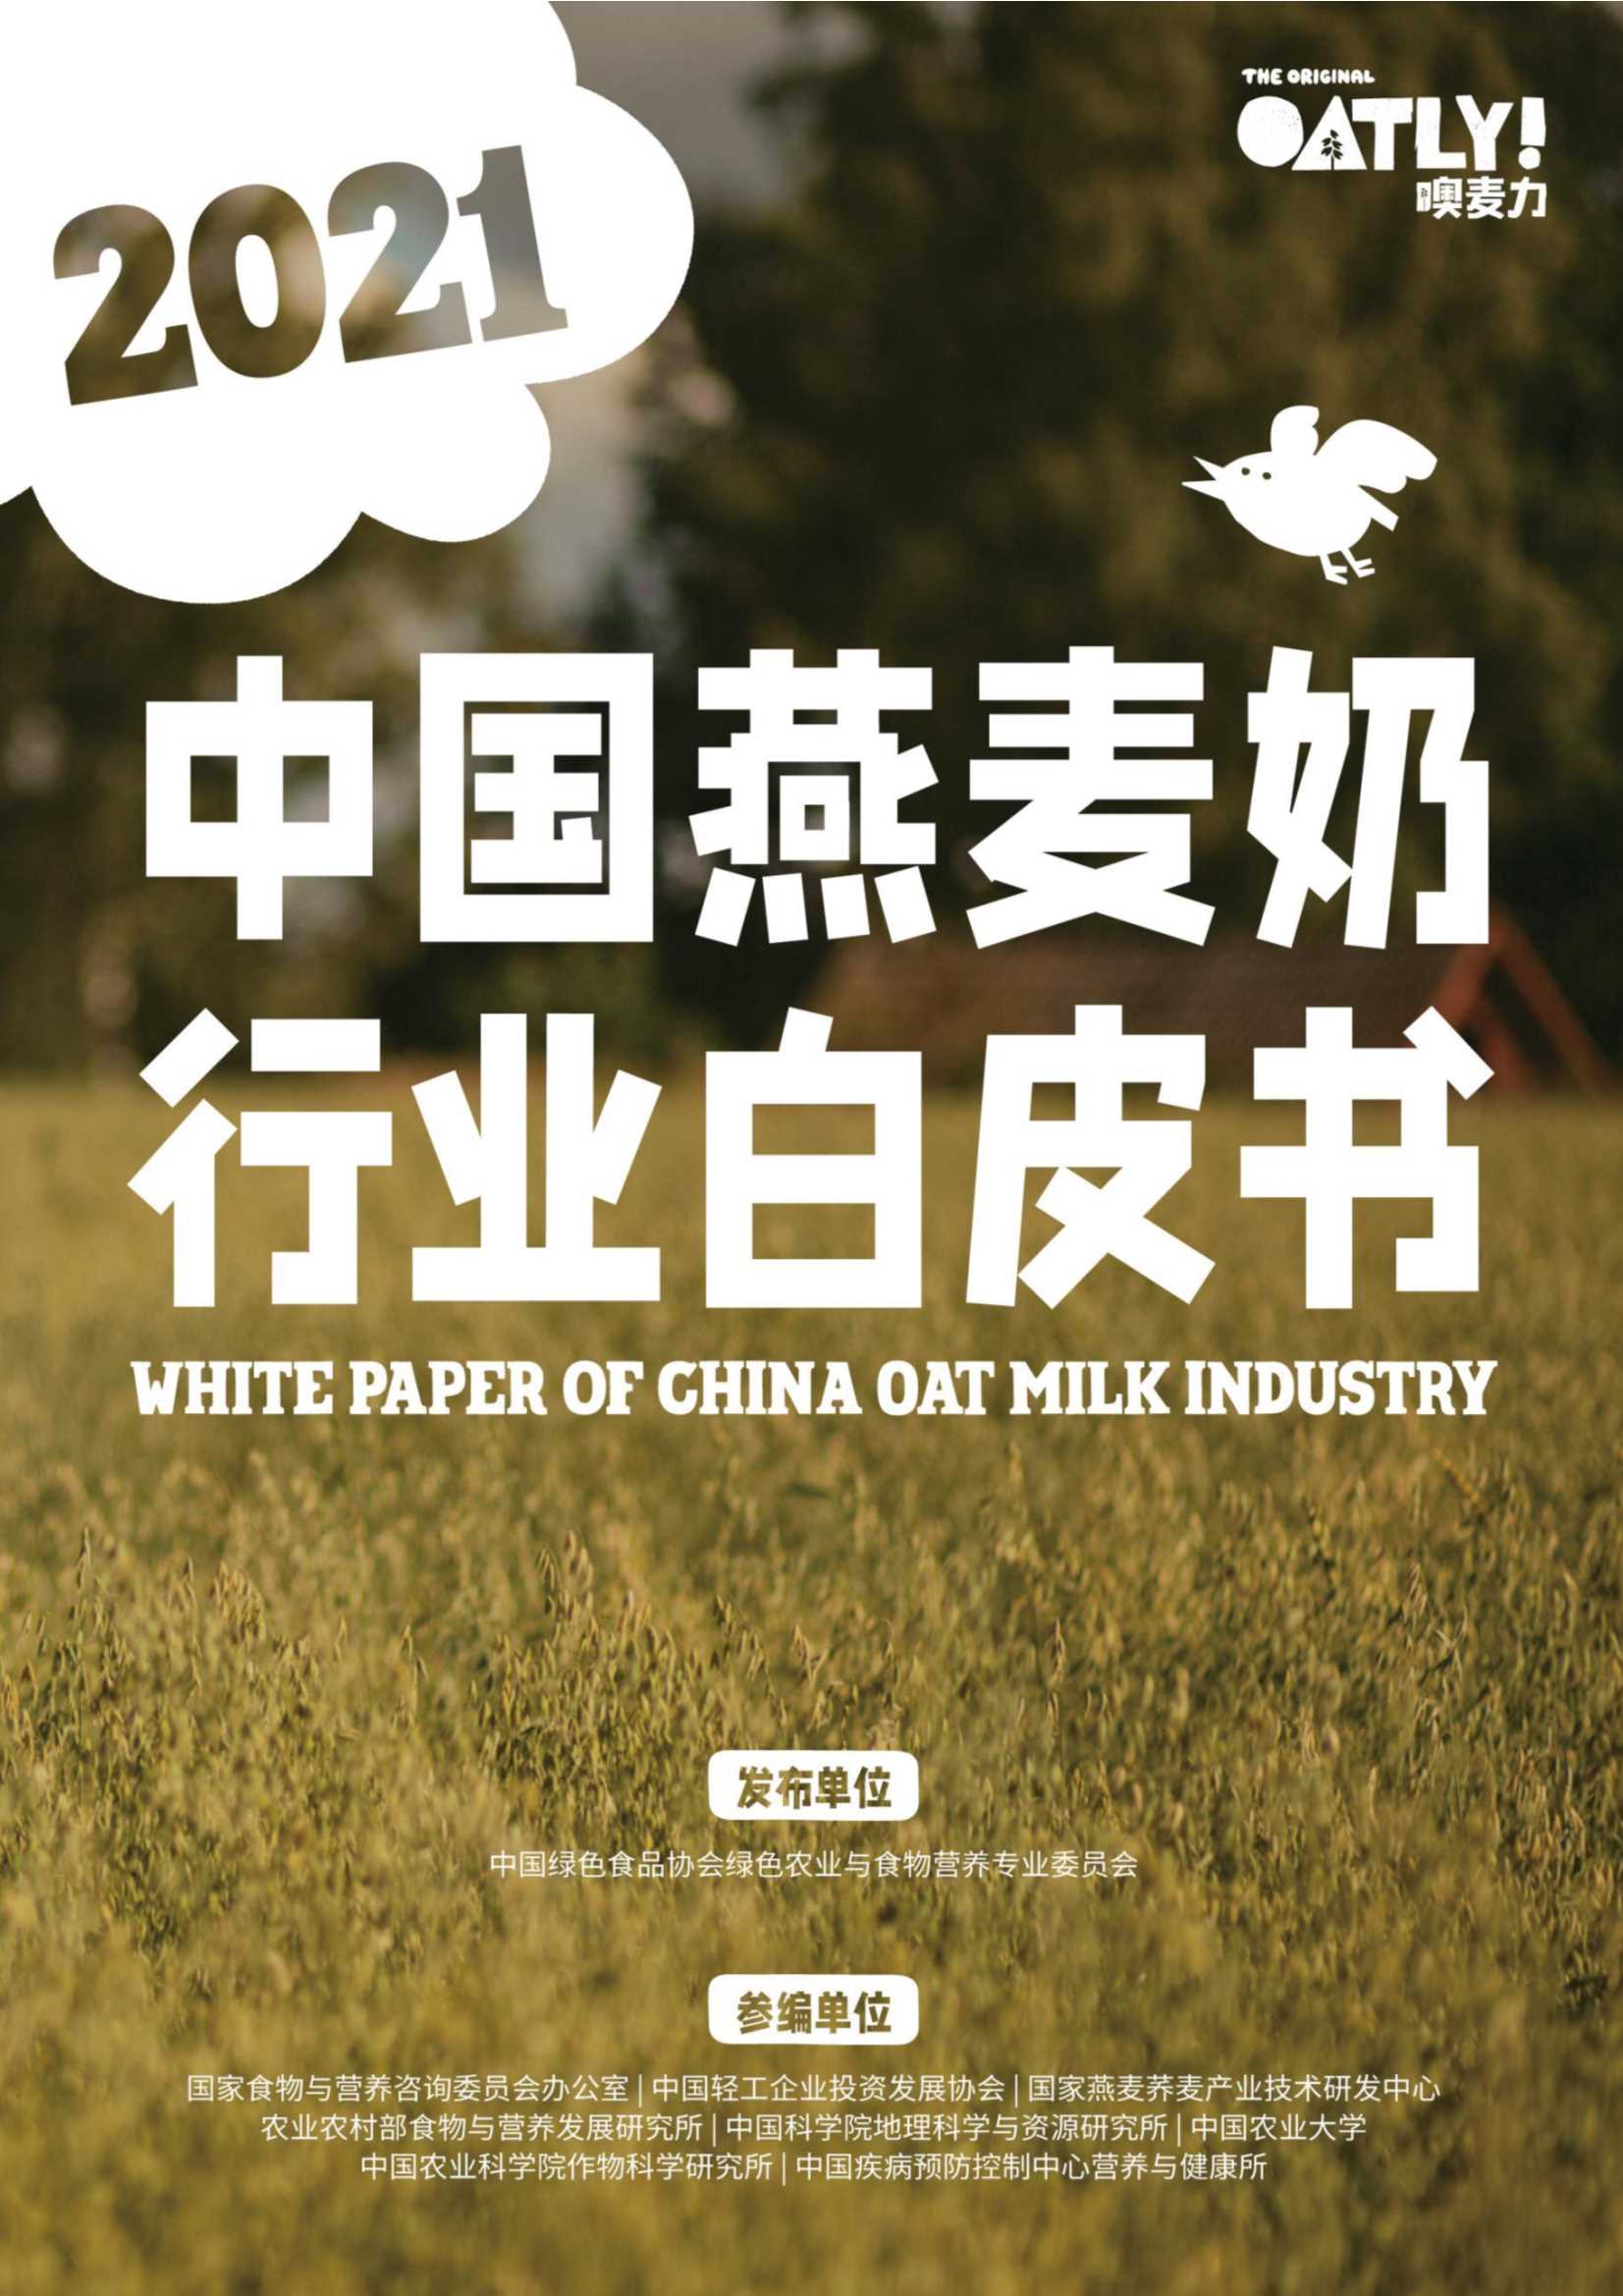 中国燕麦奶行业白皮书-奧麦力&绿色食品协会-21页